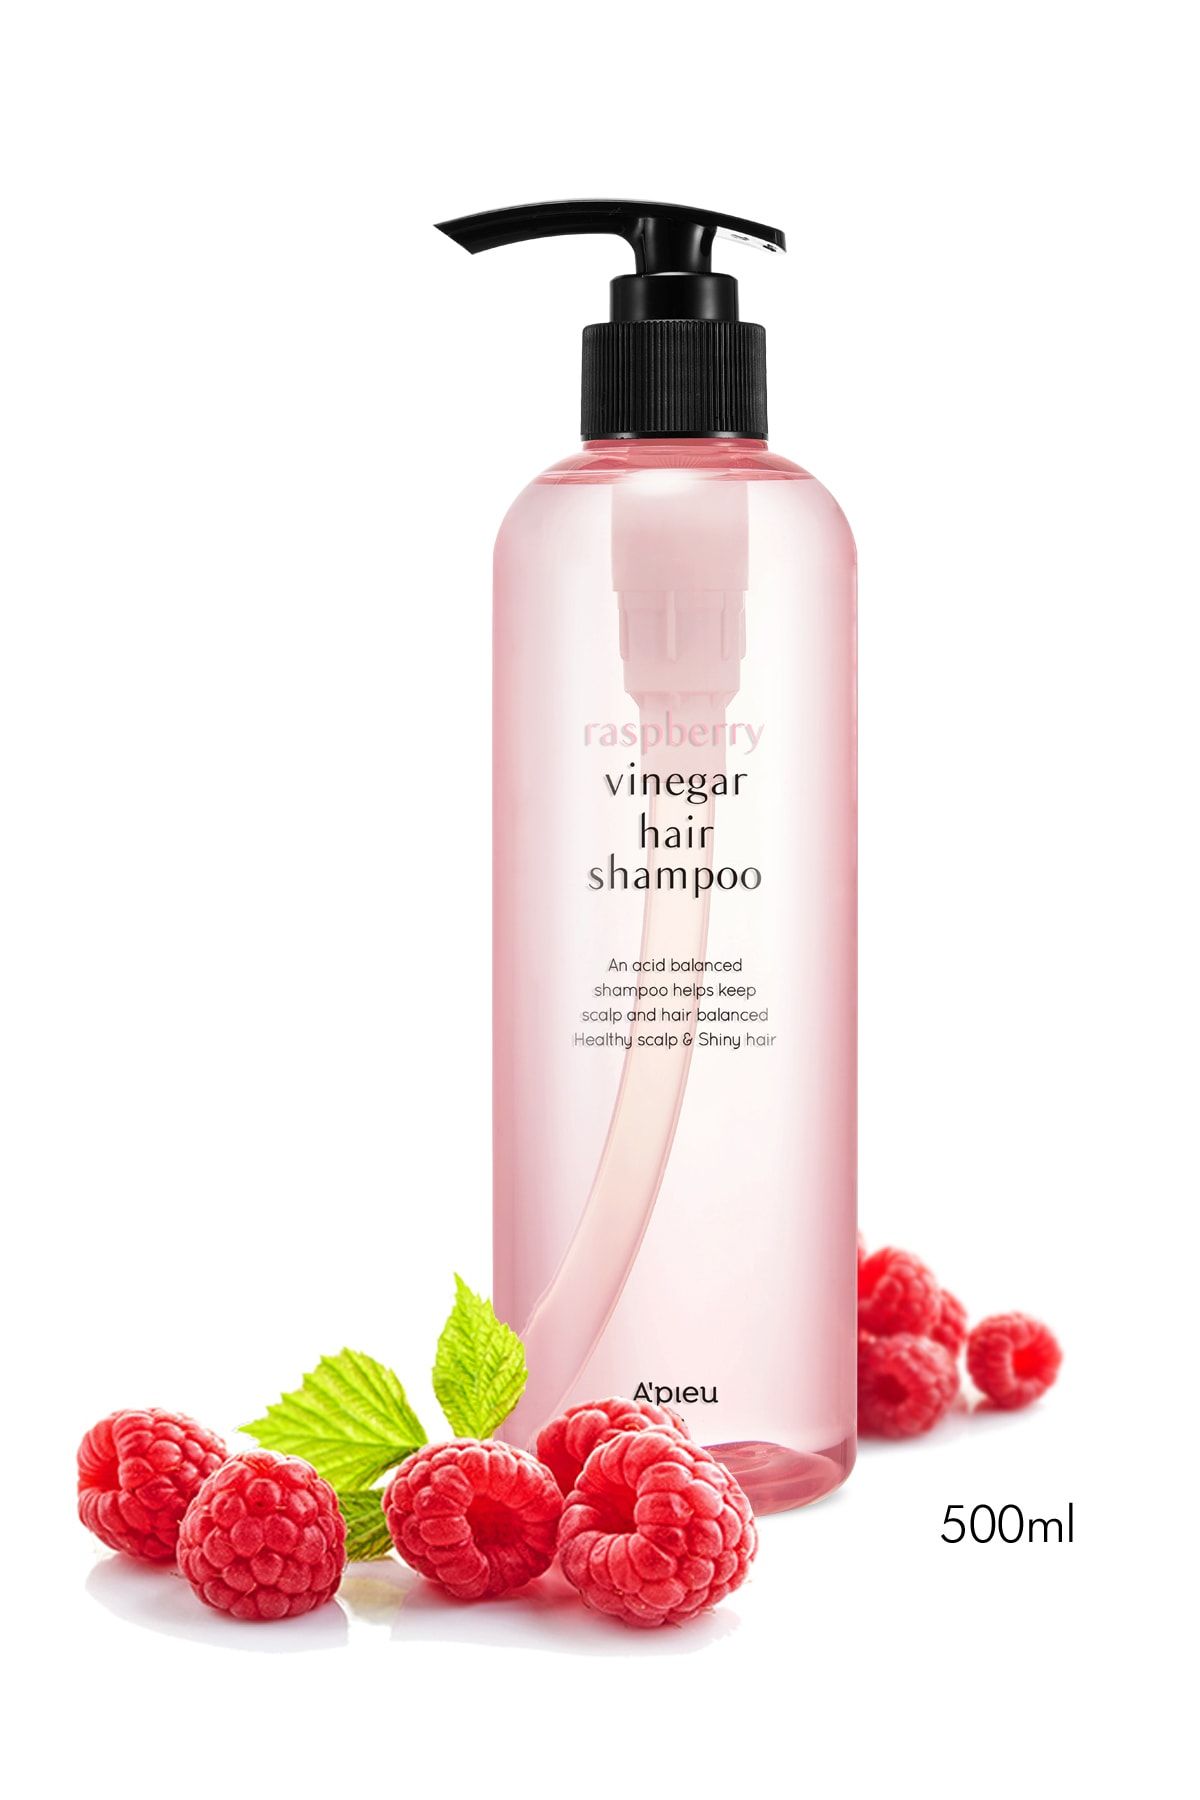 Missha Canlı, Parlak Ve Güçlü Görünen Saçlar Için Ahududu Sirkeli Şampuan Raspberry Vinegar Hair Shampoo